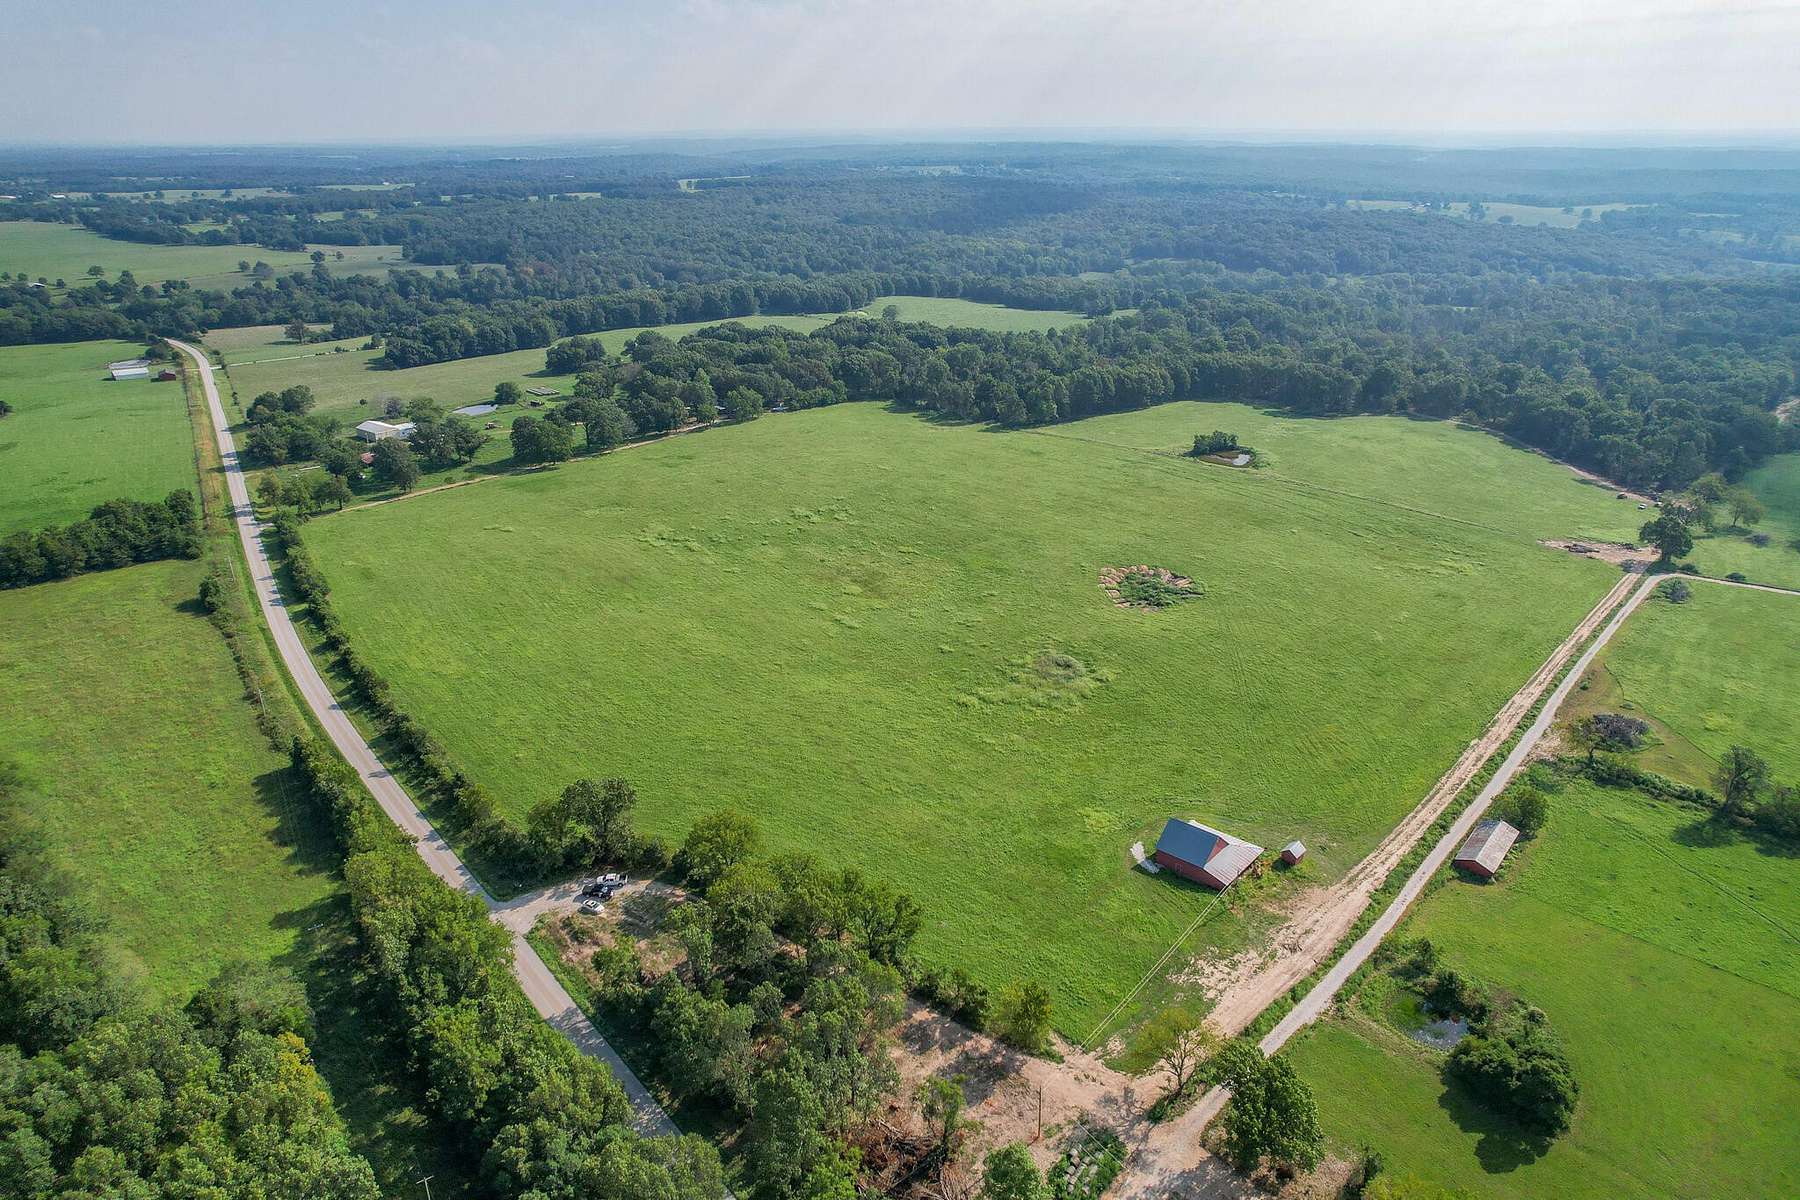 40 Acres of Agricultural Land for Sale in Hartville, Missouri